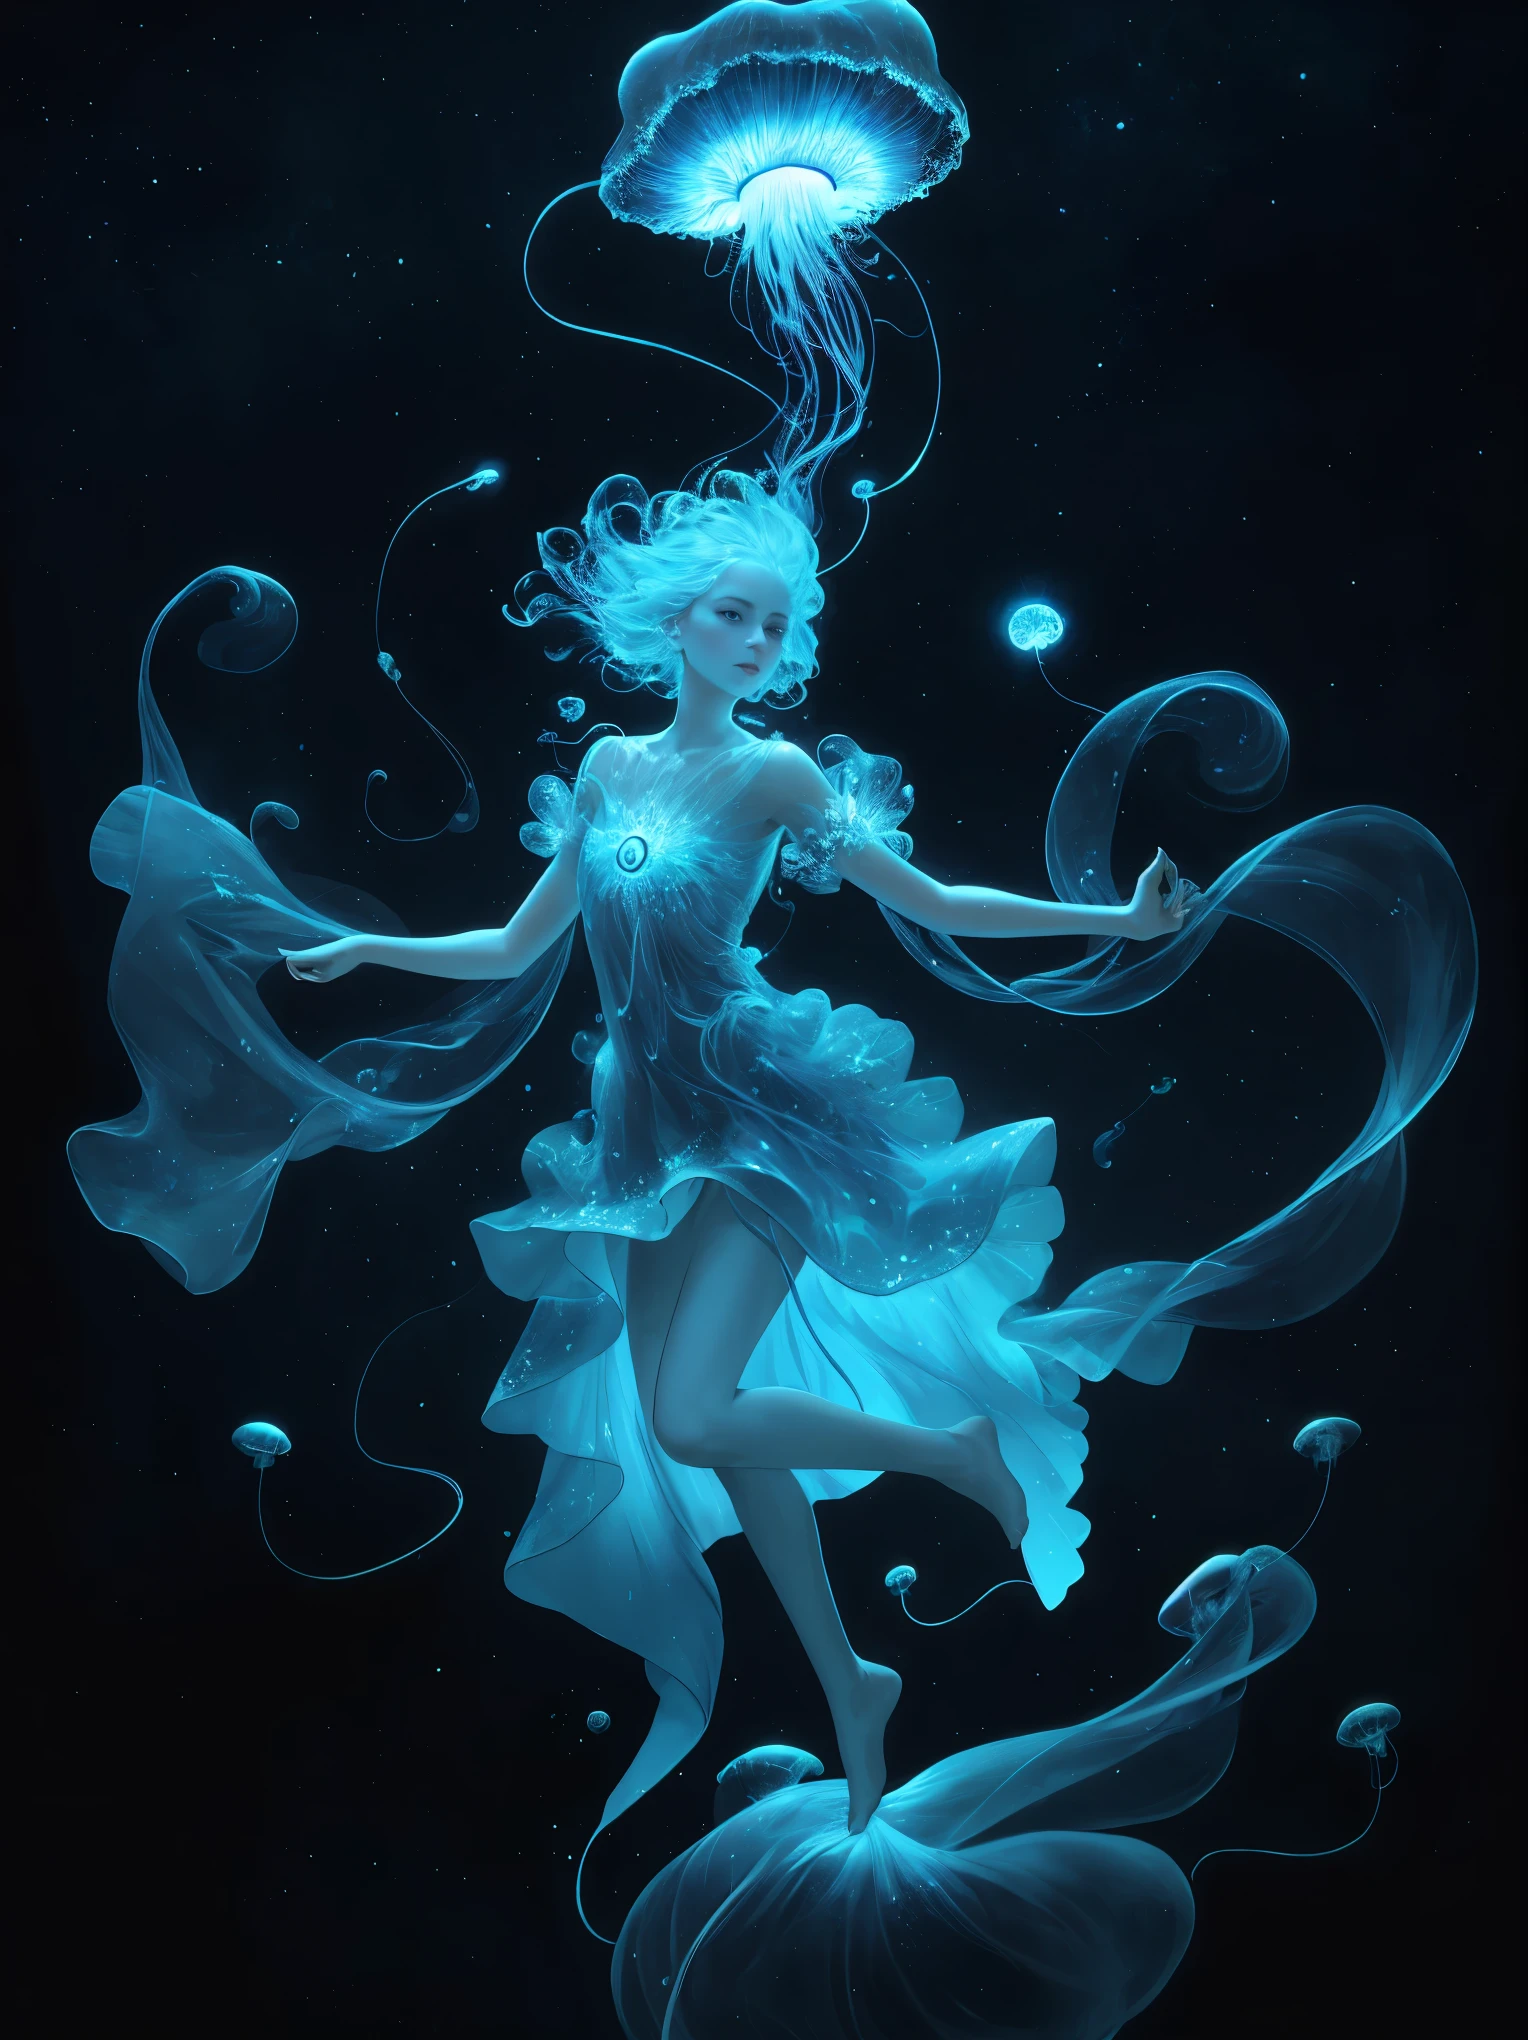 Una medusa celestial, flotando en el cosmos con zarcillos bioluminiscentes que crean una danza cósmica.